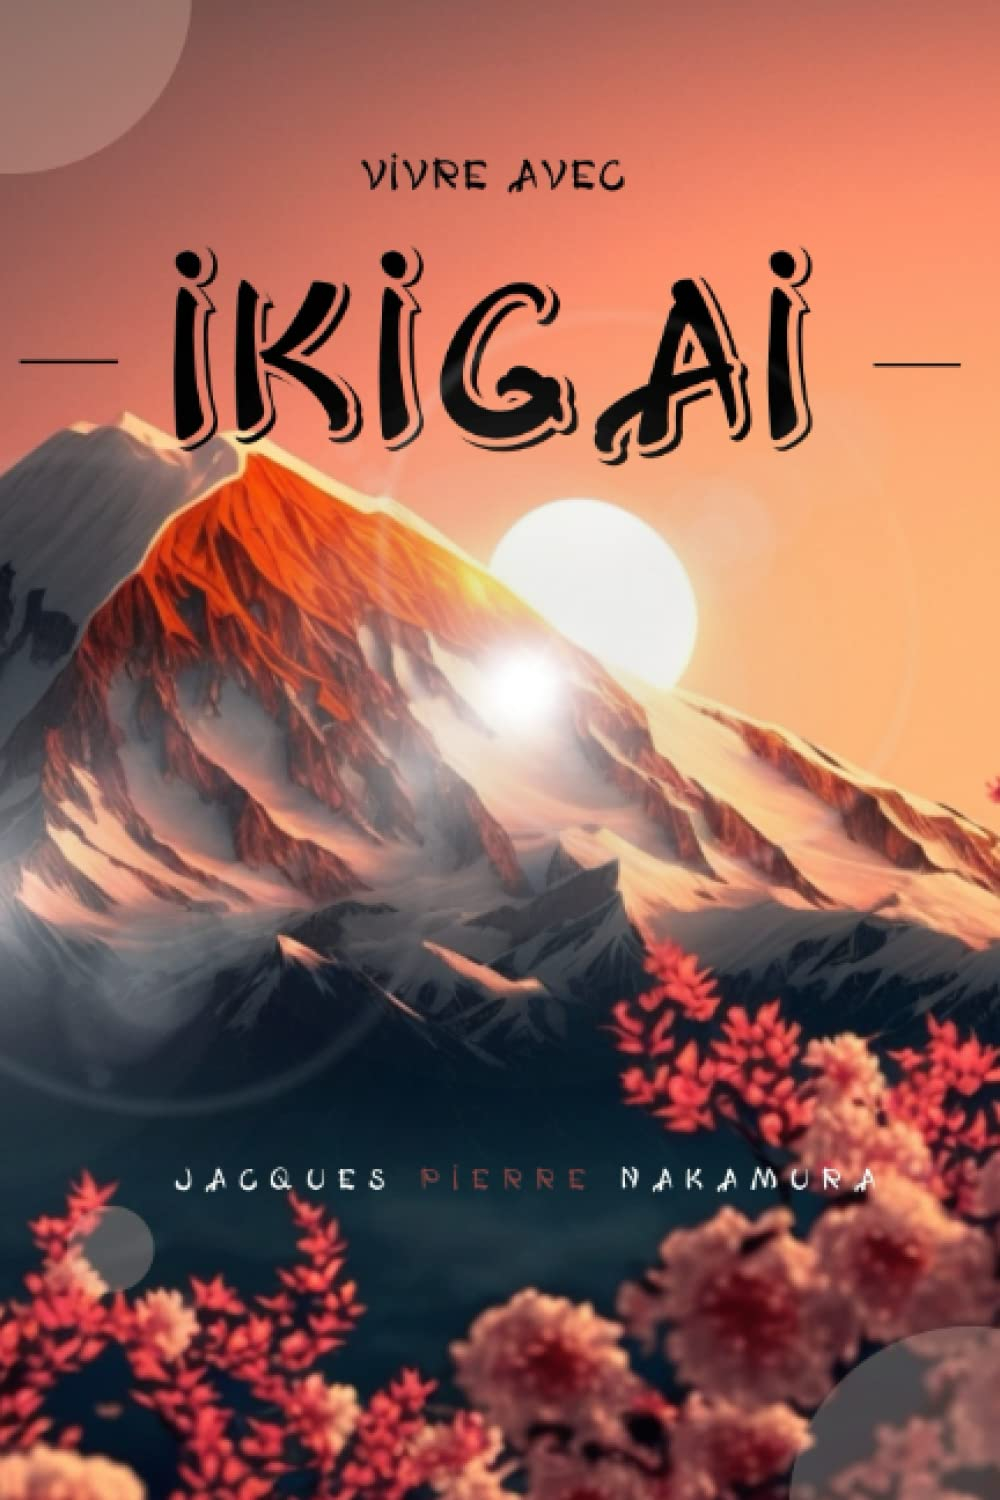 Vivre avec Ikigai: La voie vers l'harmonie de vie. La méthode japonaise pour atteindre l'épanouissem